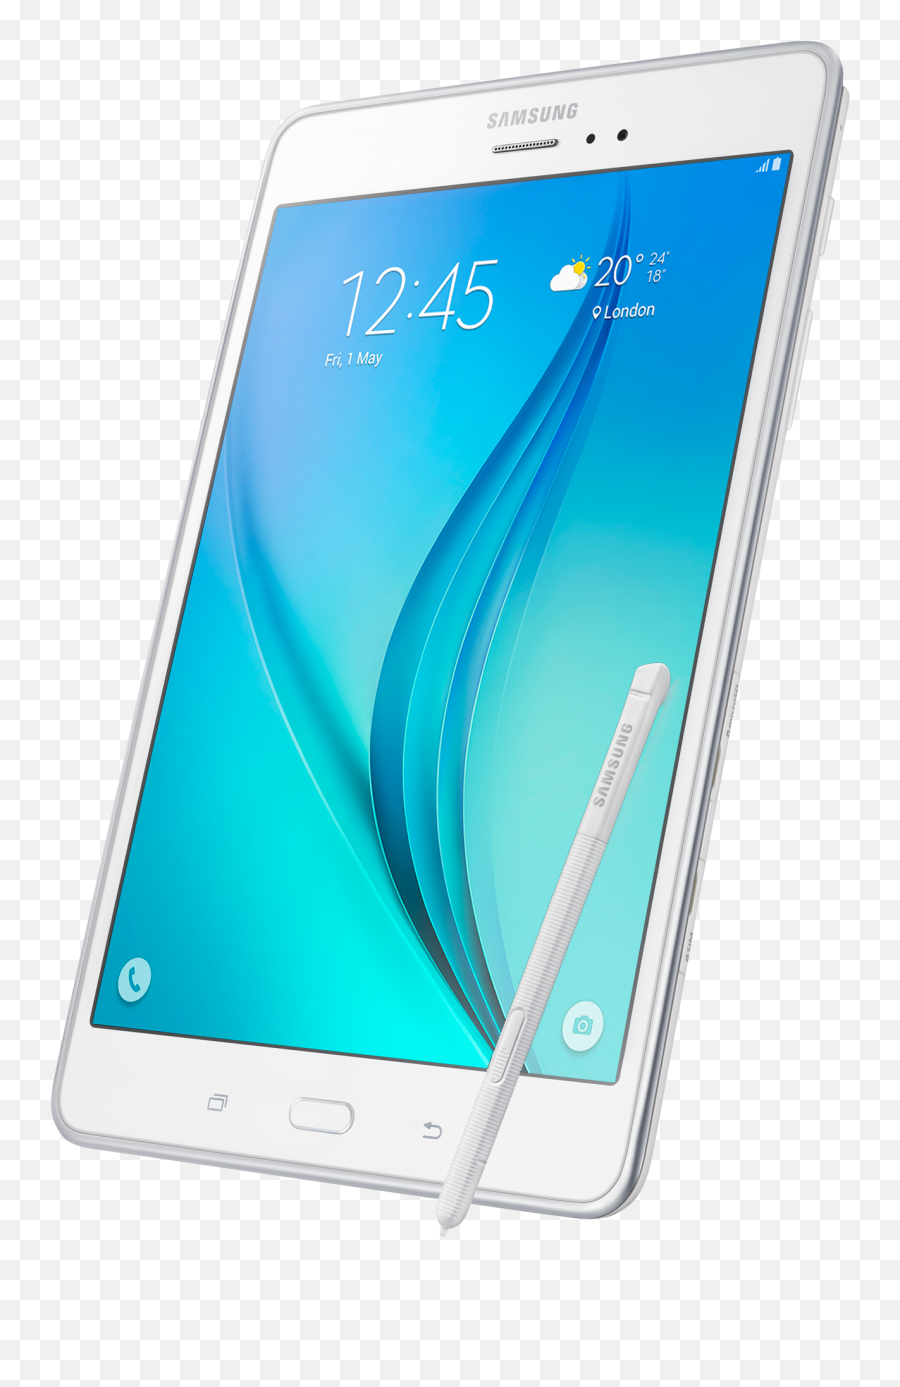 Samsung Galaxy Tab A 8 With S Pen U2013 Samsung Galaxy Tab A - Galaxy Tab A Sm P355c Emoji,Z2 Emojis